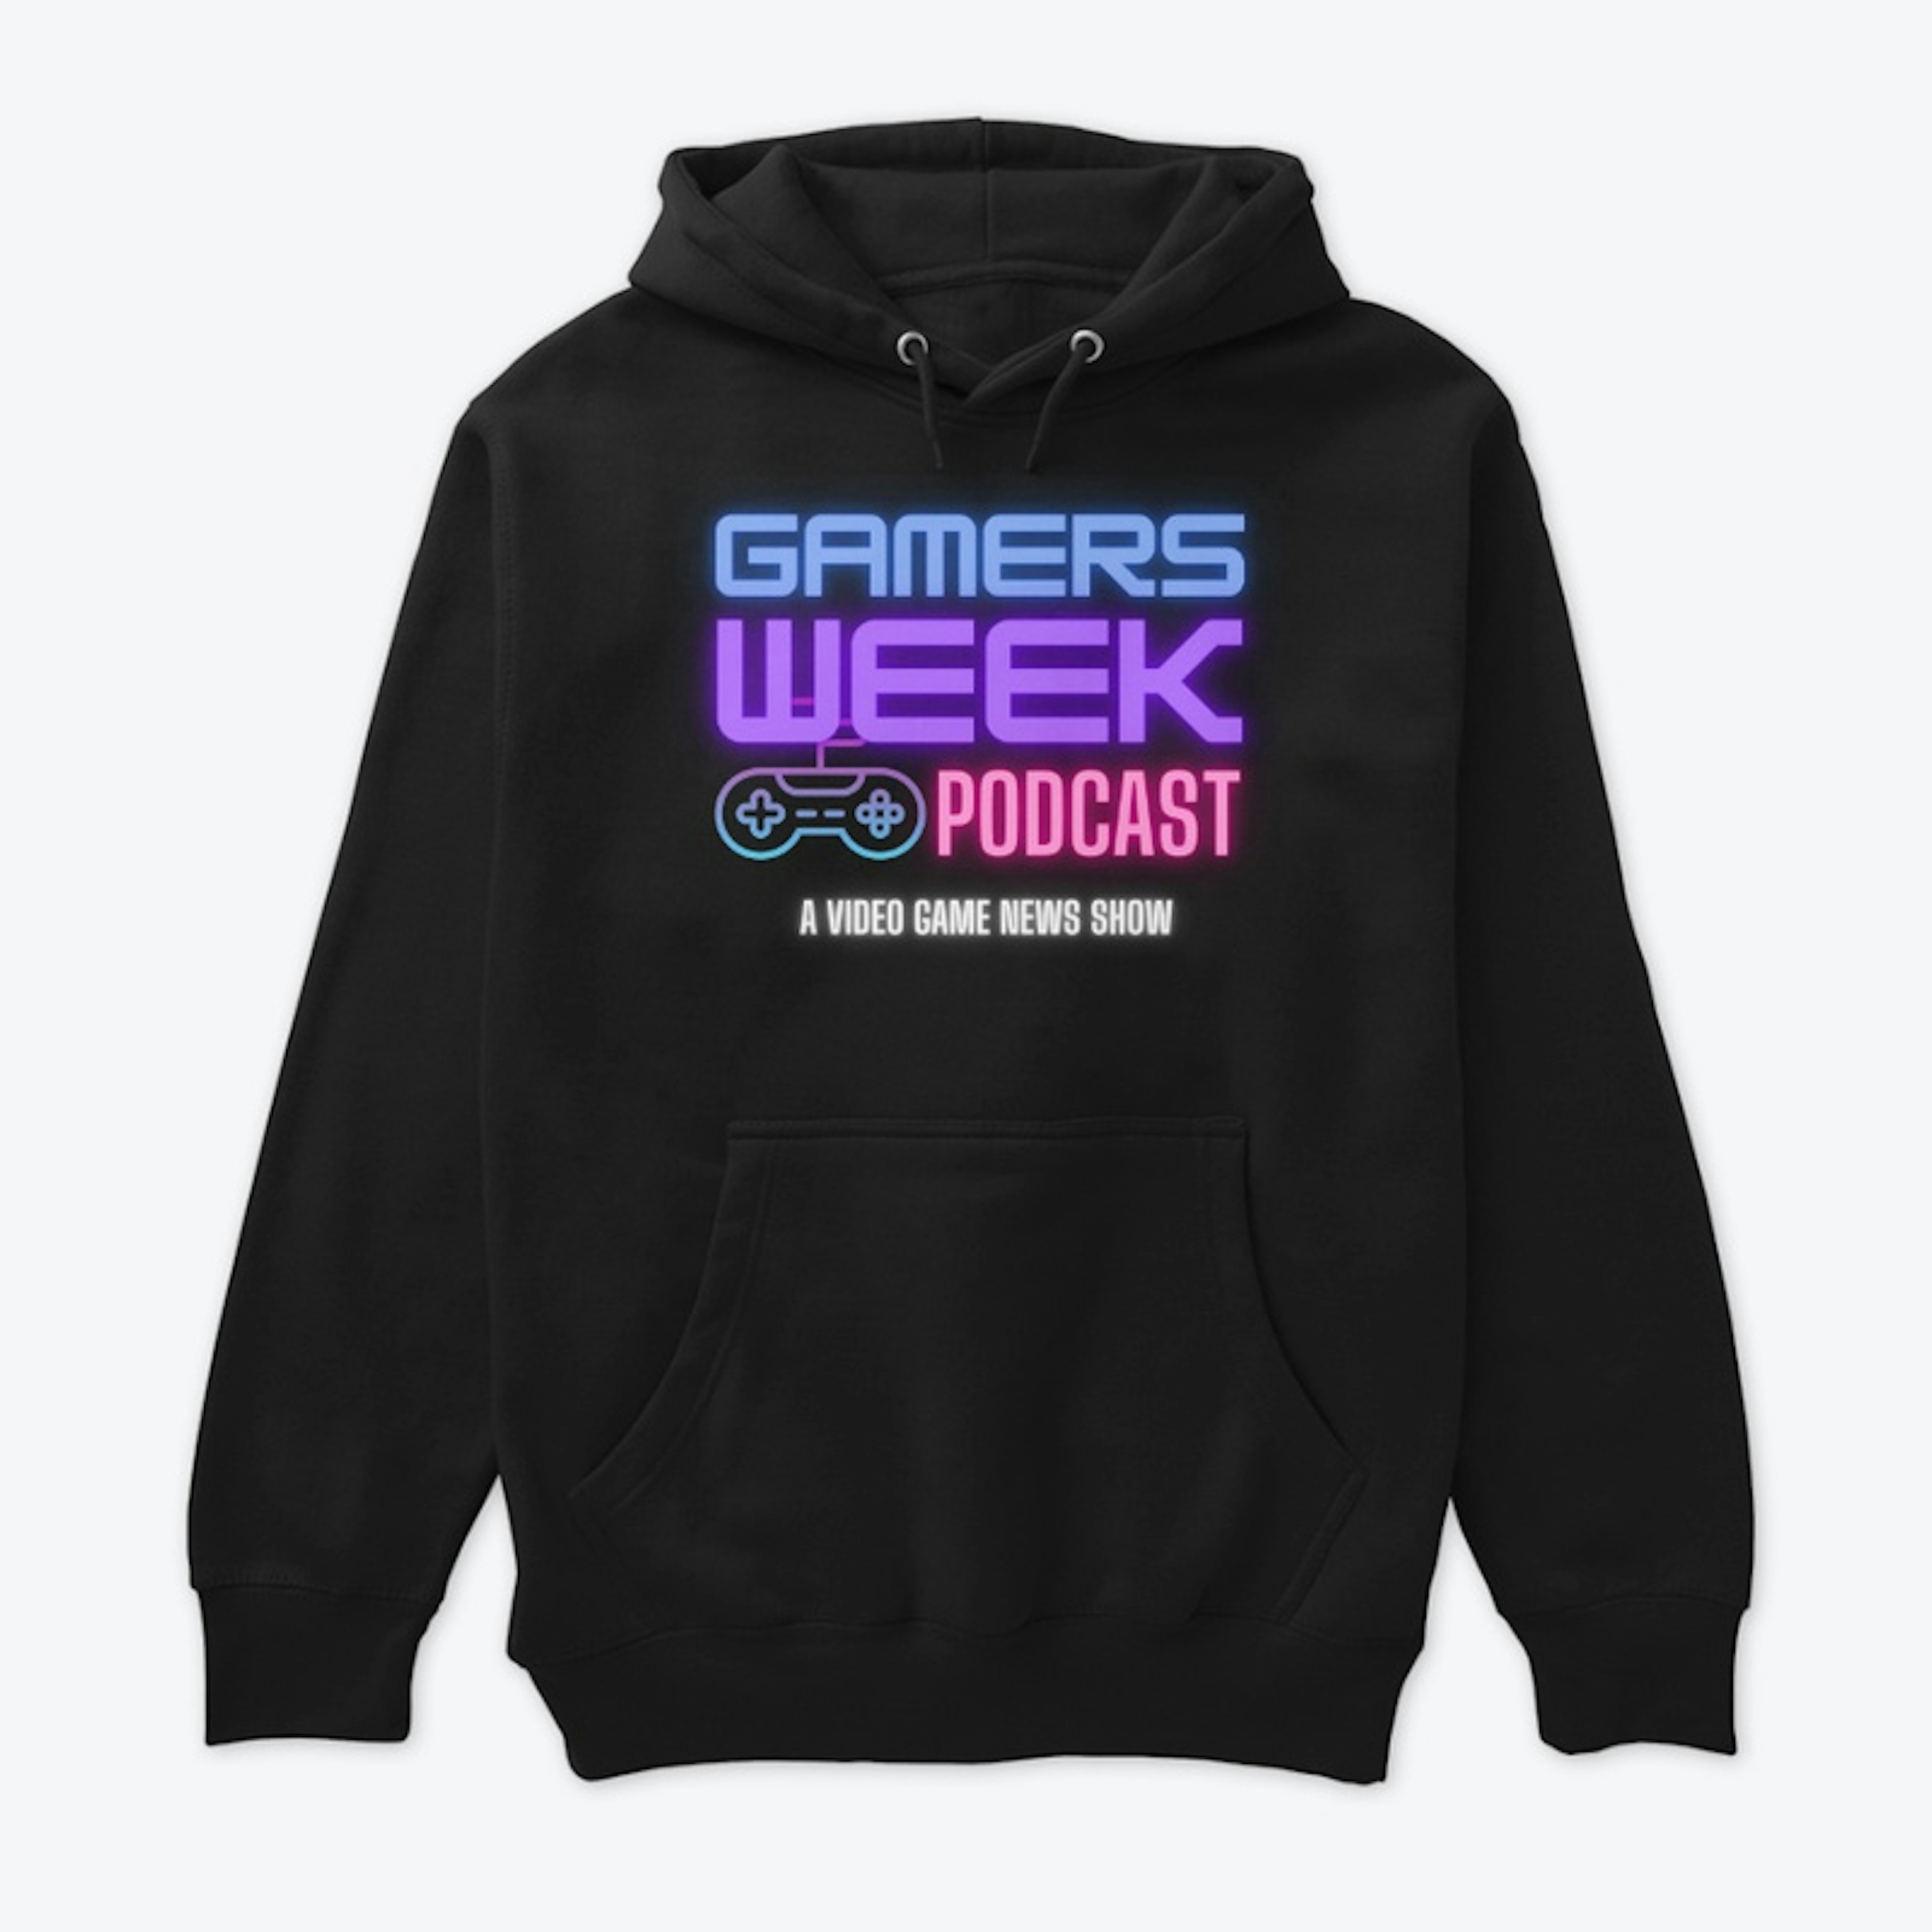 Gamers Week Podcast Premium Hoodie